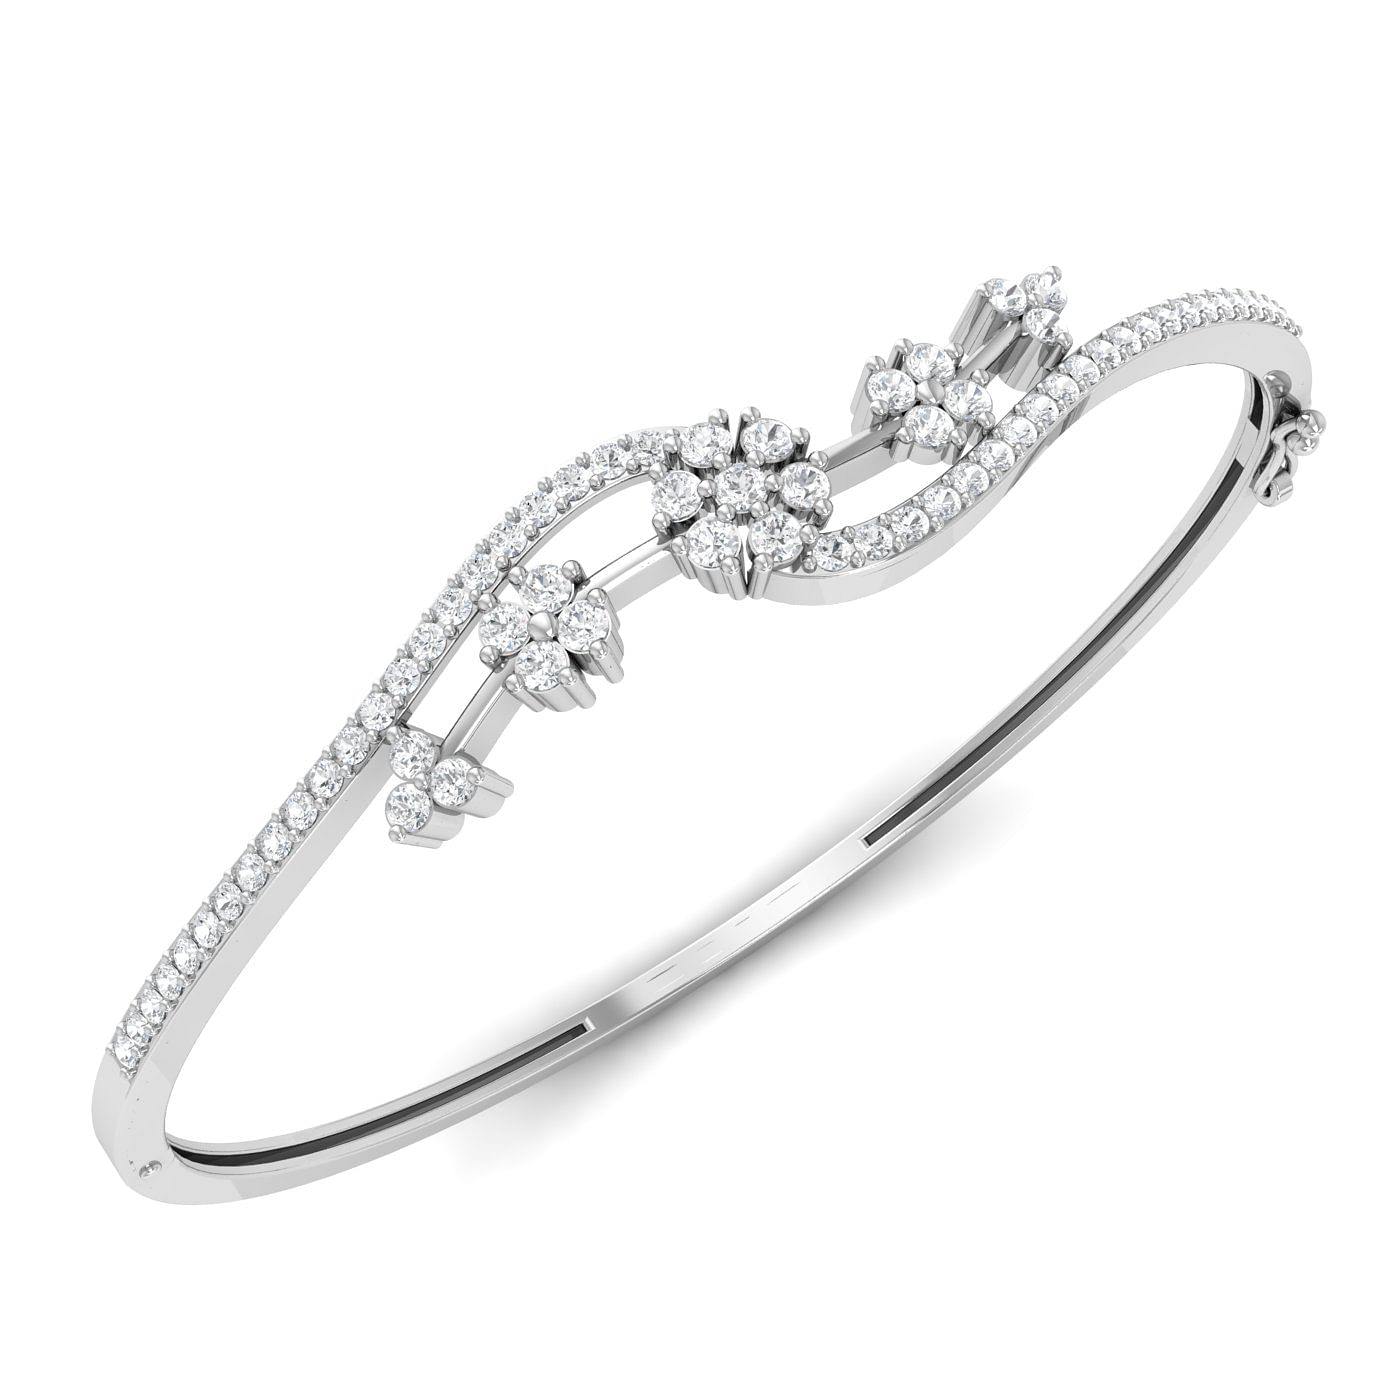 White gold Foxtail Diamond Bracelet for women